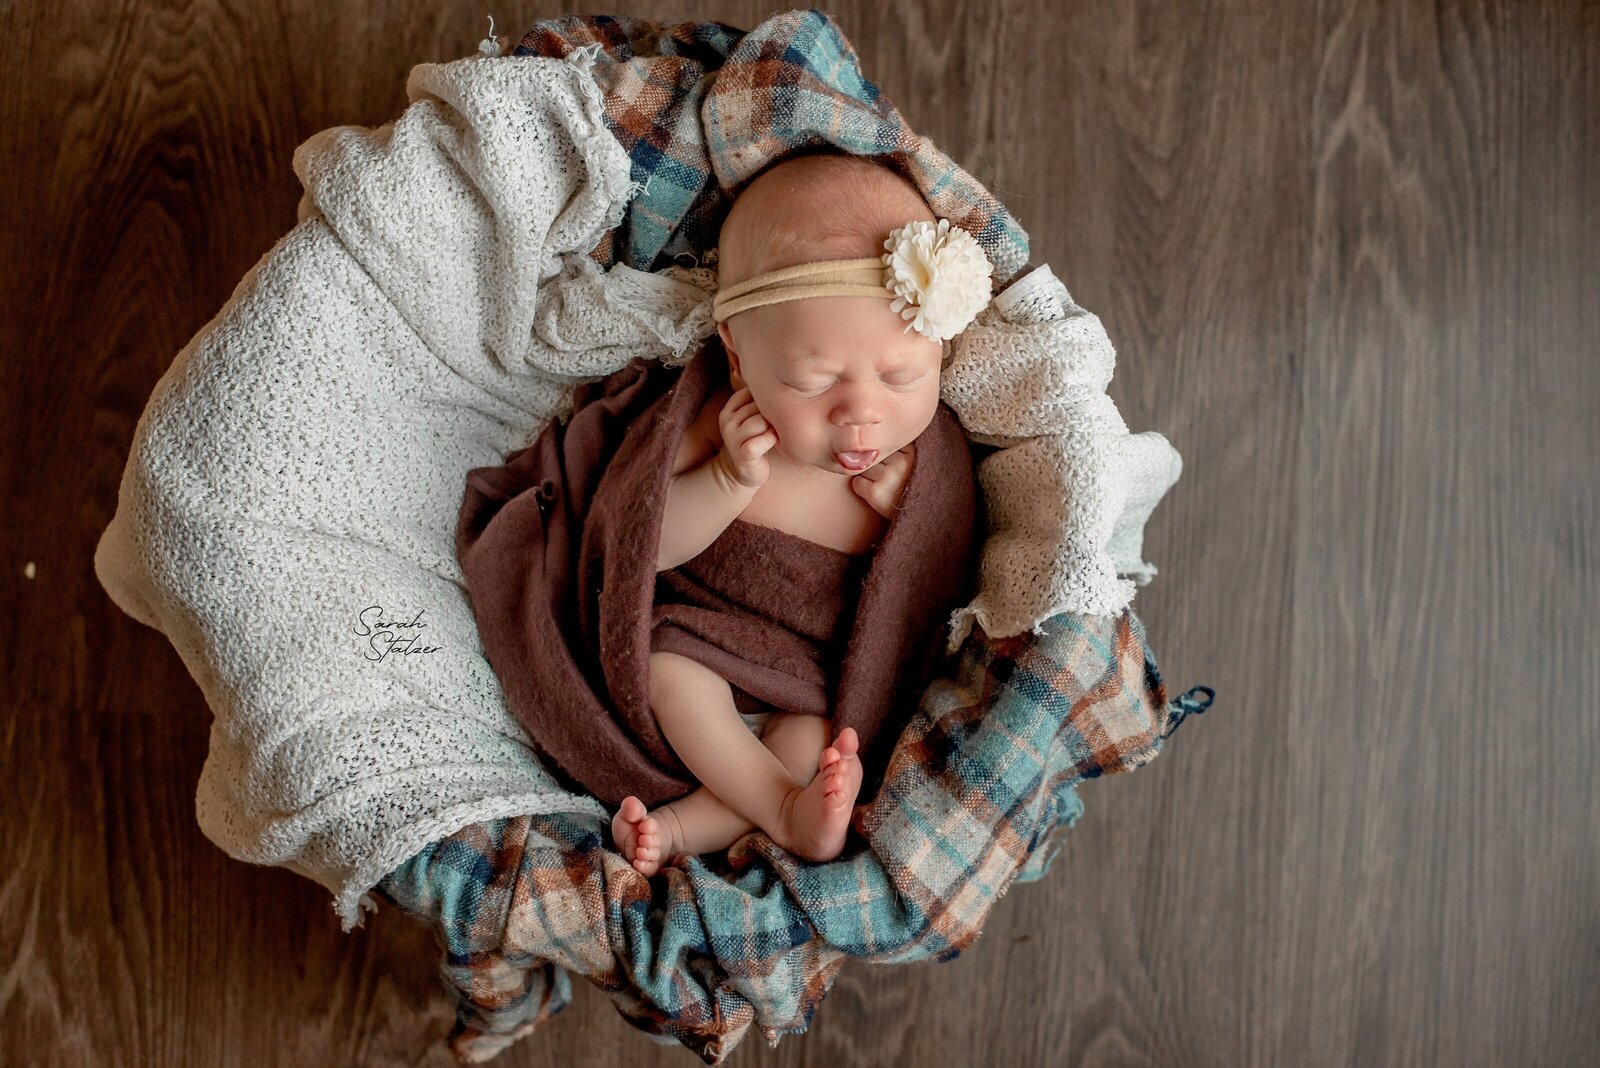 edmonton-newborn-photographer-8733